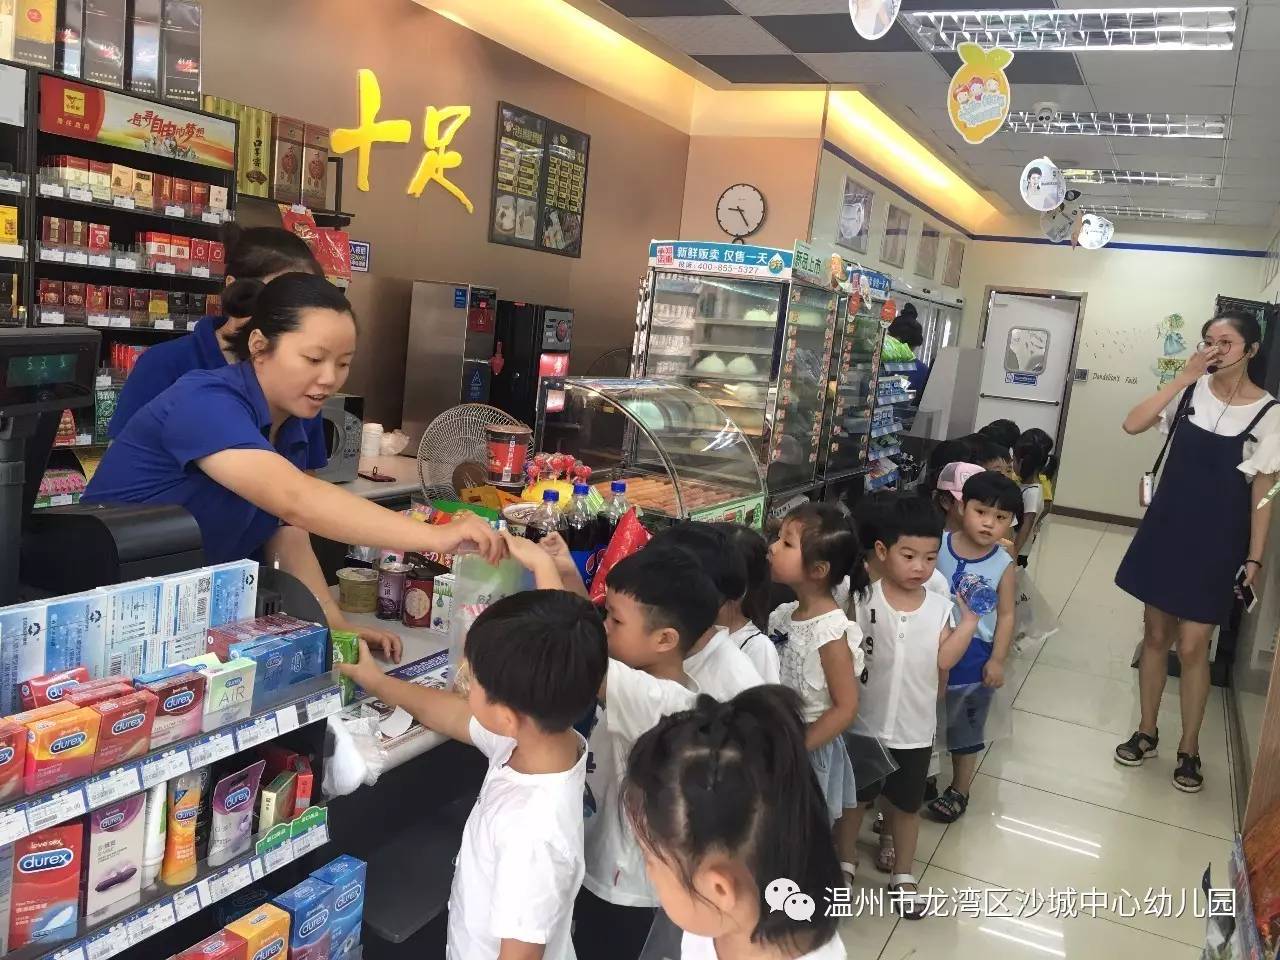 在老师的带领讲解下,小朋友们了解了超市物品的种类,物品摆放的区域